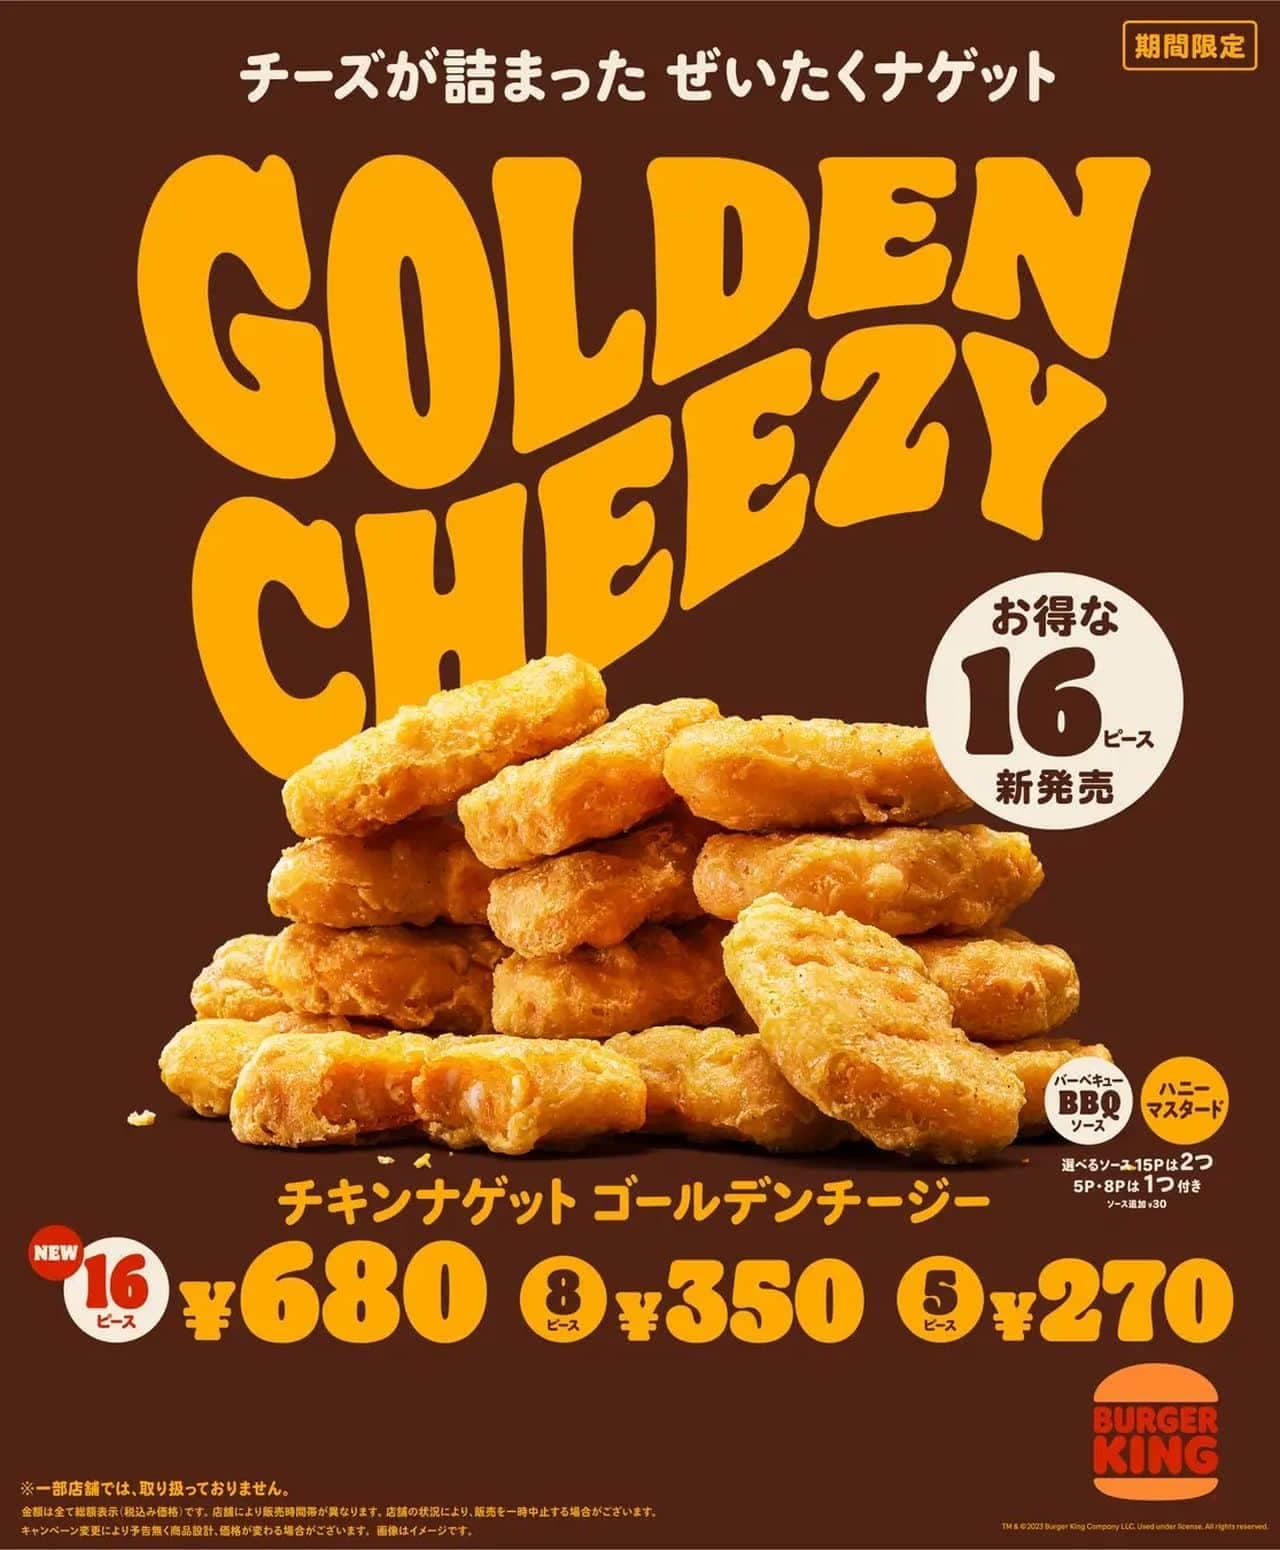 Burger King "Chicken Nuggets Golden Cheezy 16 Piece"